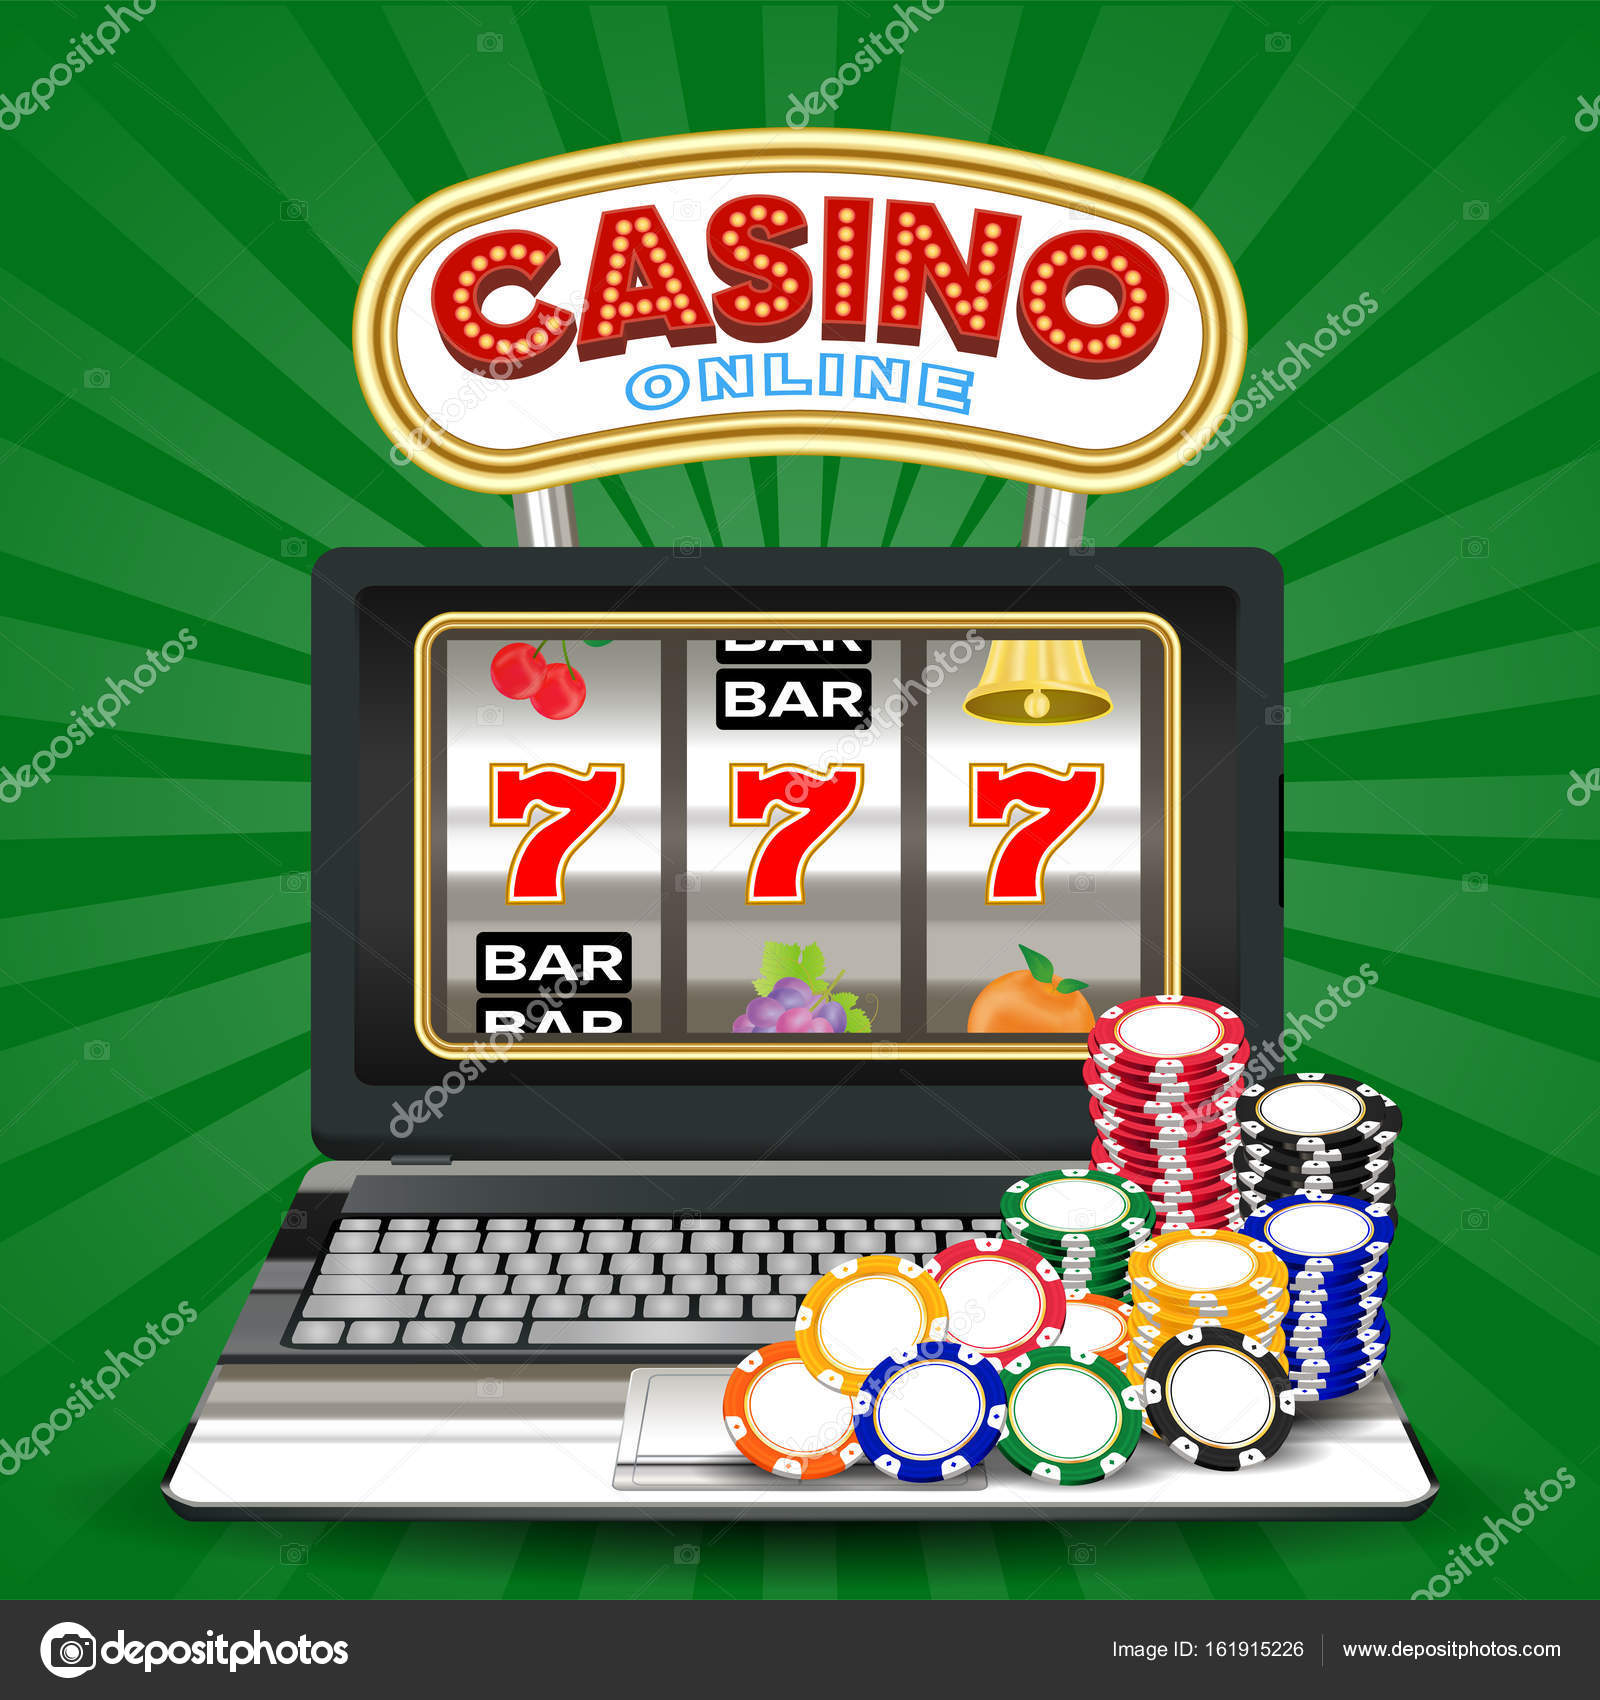 Site de cazino online